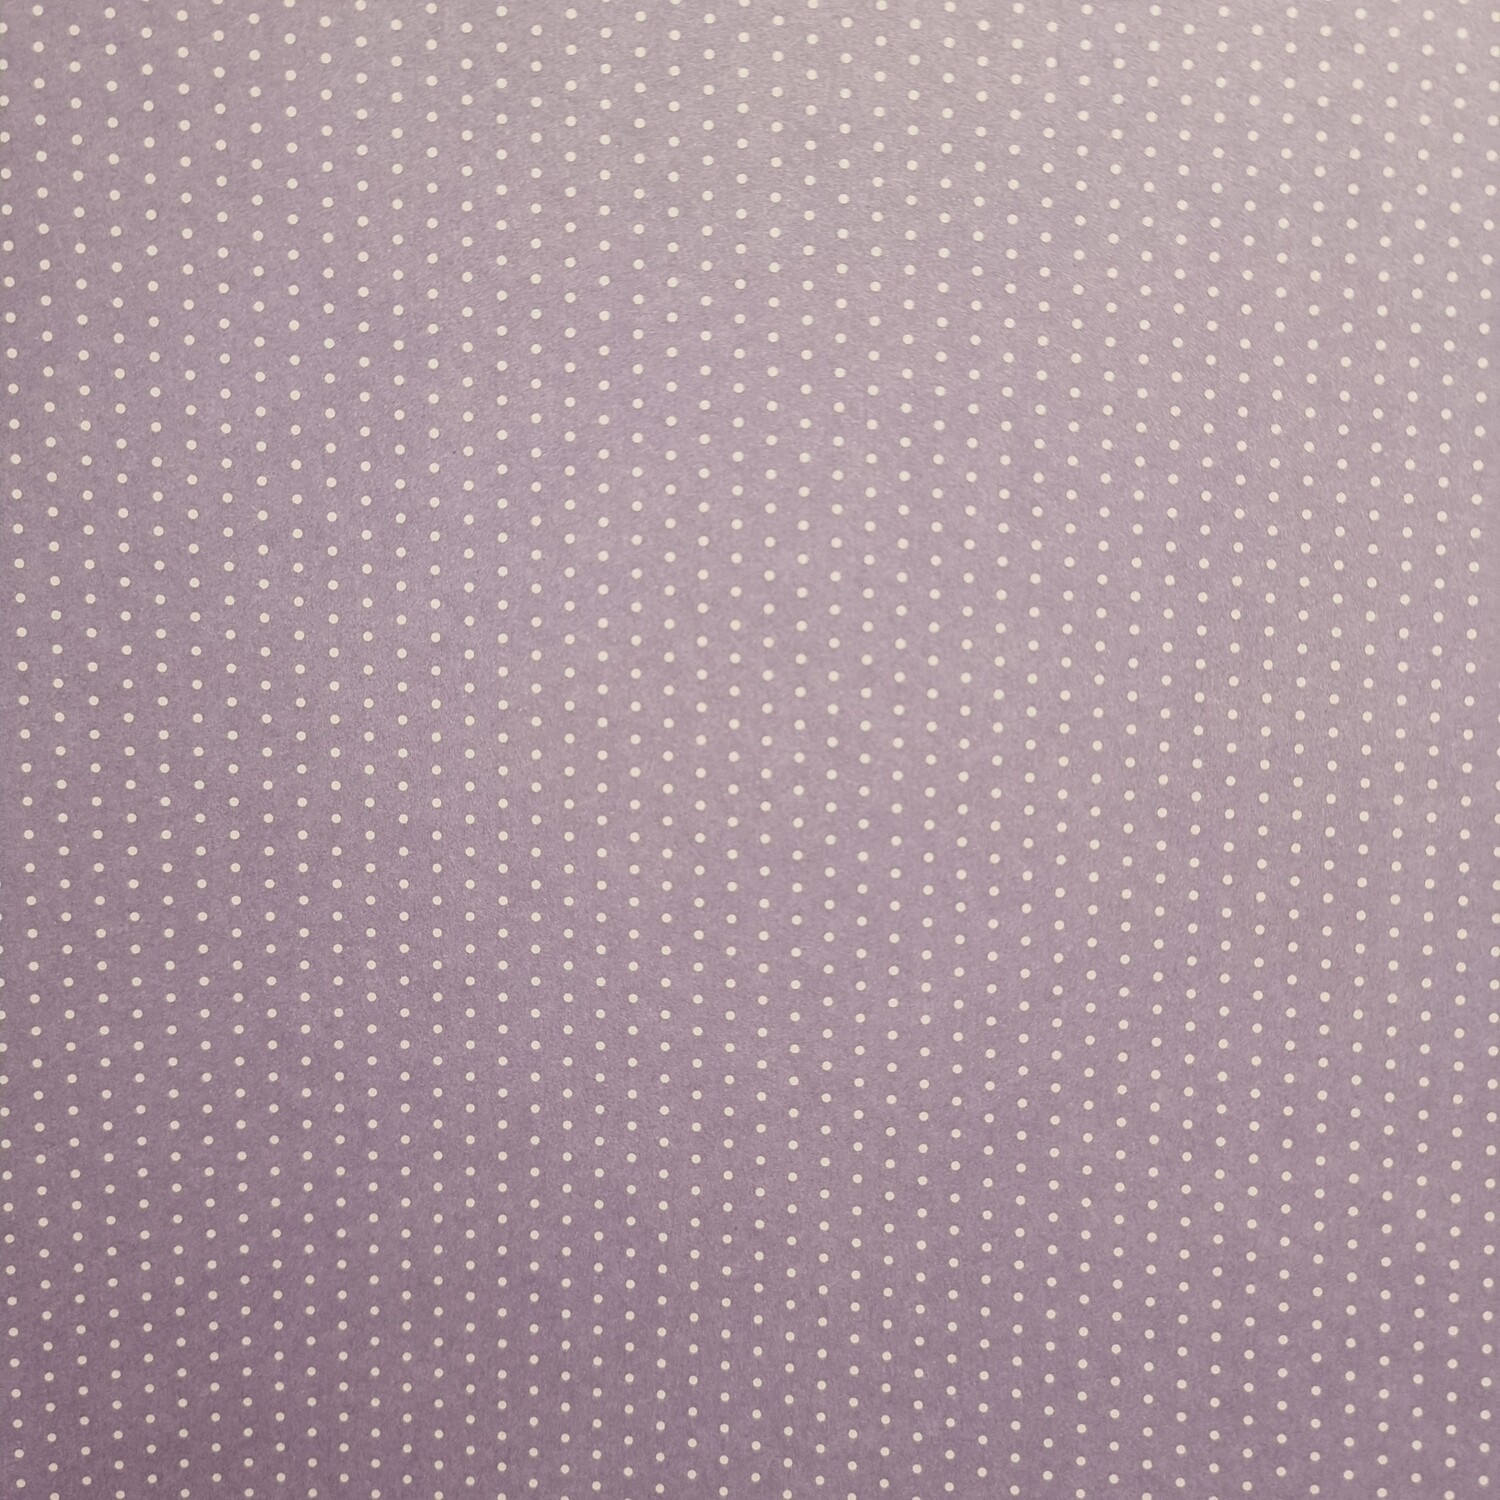 Motivpapier Mini Punkte lila mit weißen Punkten